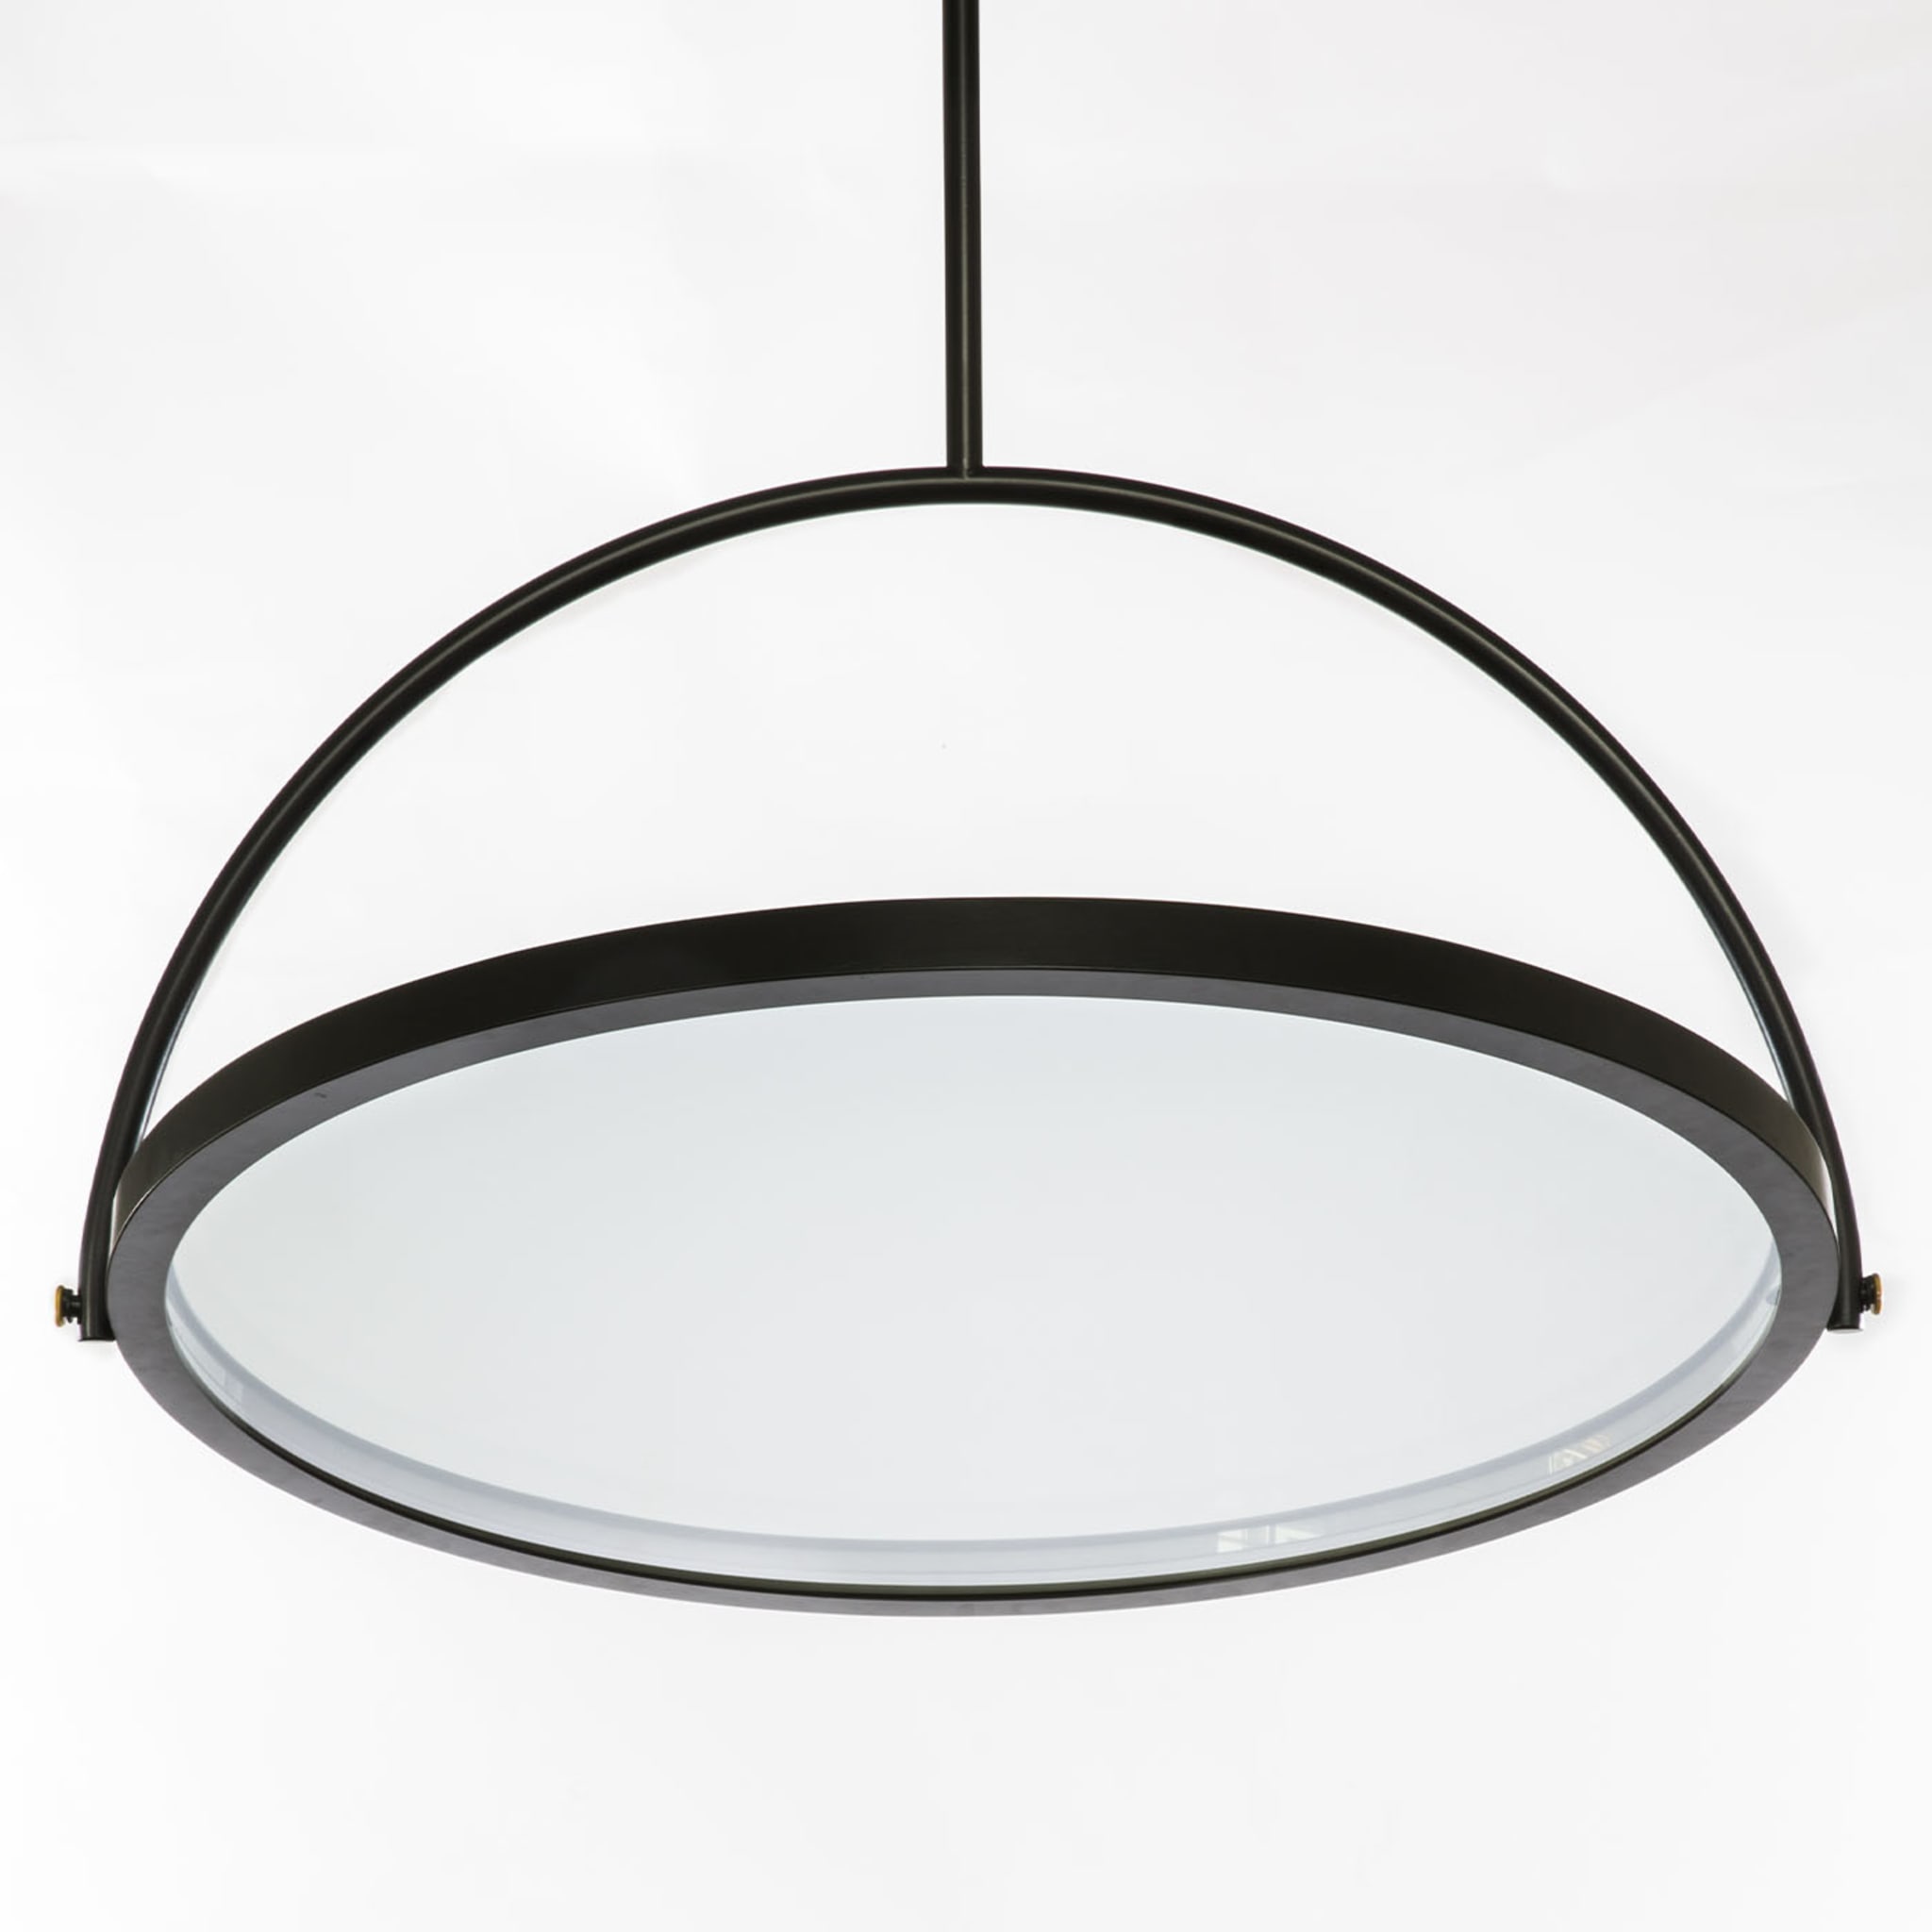 Oblio Mirror Lamp by Gio Tirotto  - Alternative view 2